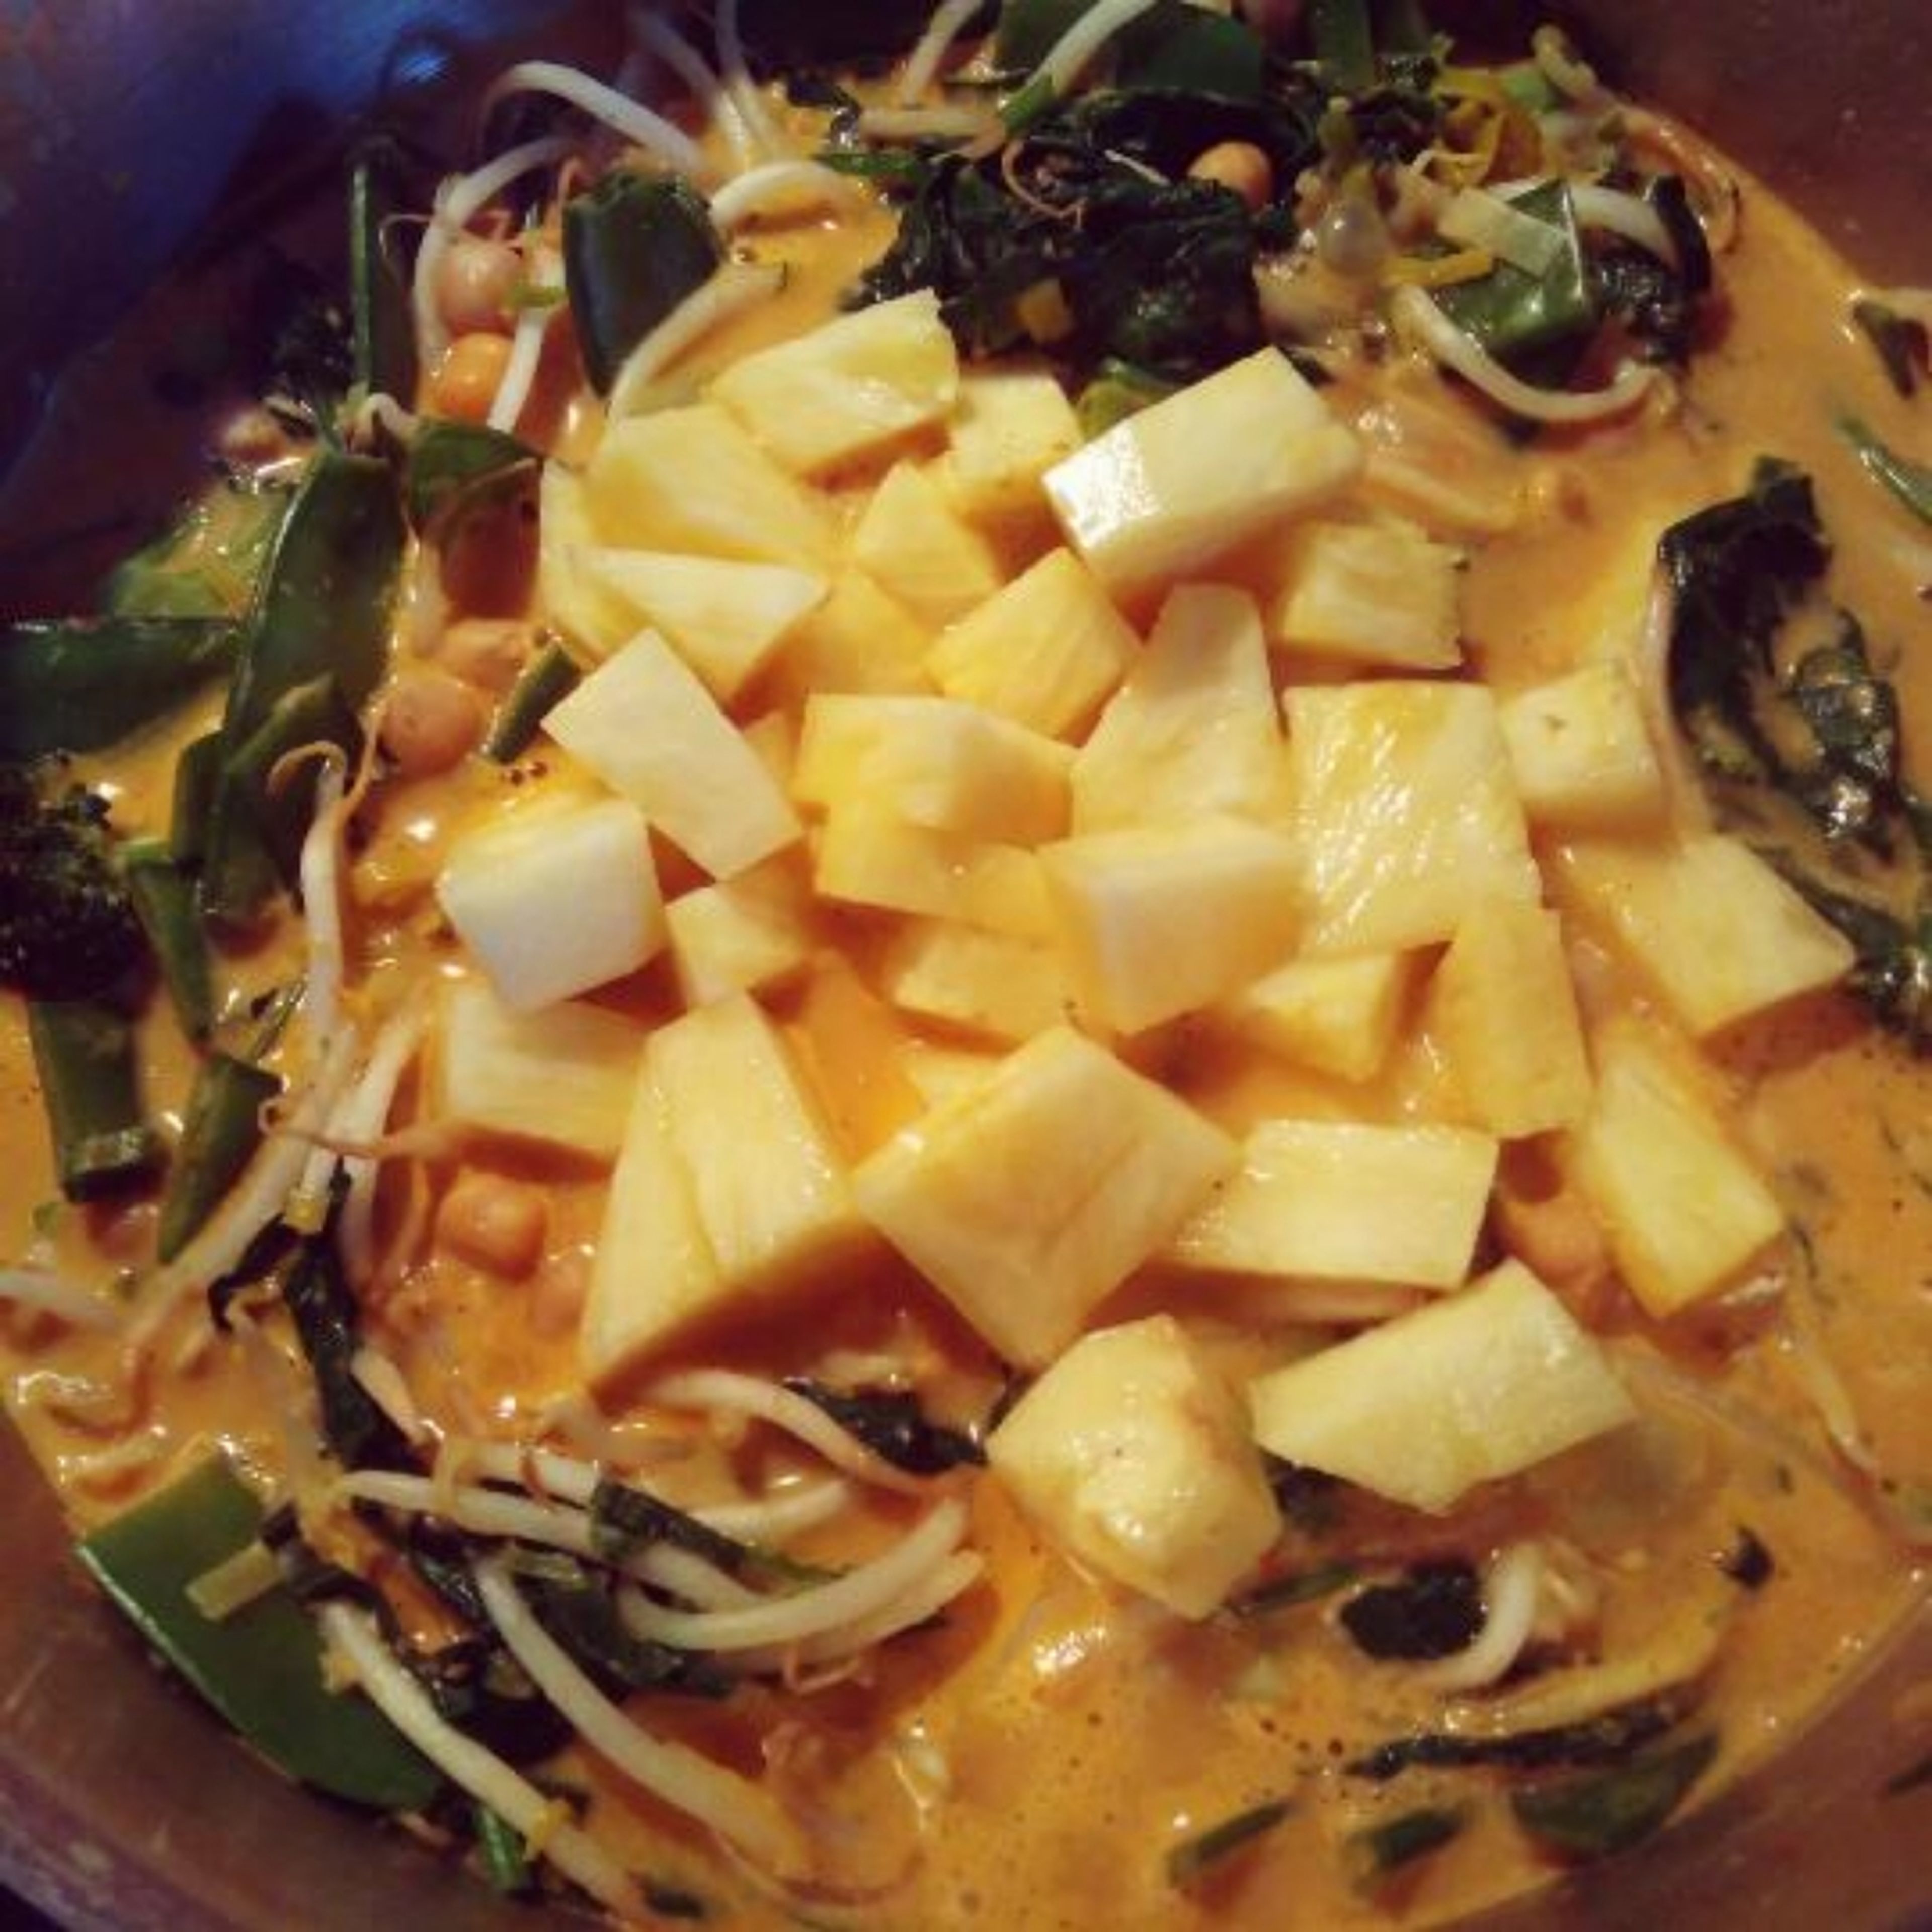 Nun Spinat, Kokosmilch und Kichererbsen mit hinzufügen. Nach weiteren 5 Minuten Ananas und Fleisch in den Topf geben und 2 Minuten garziehen. Stärke mit etwas Wasser verrühren und unter das köchelnde Curry rühren.